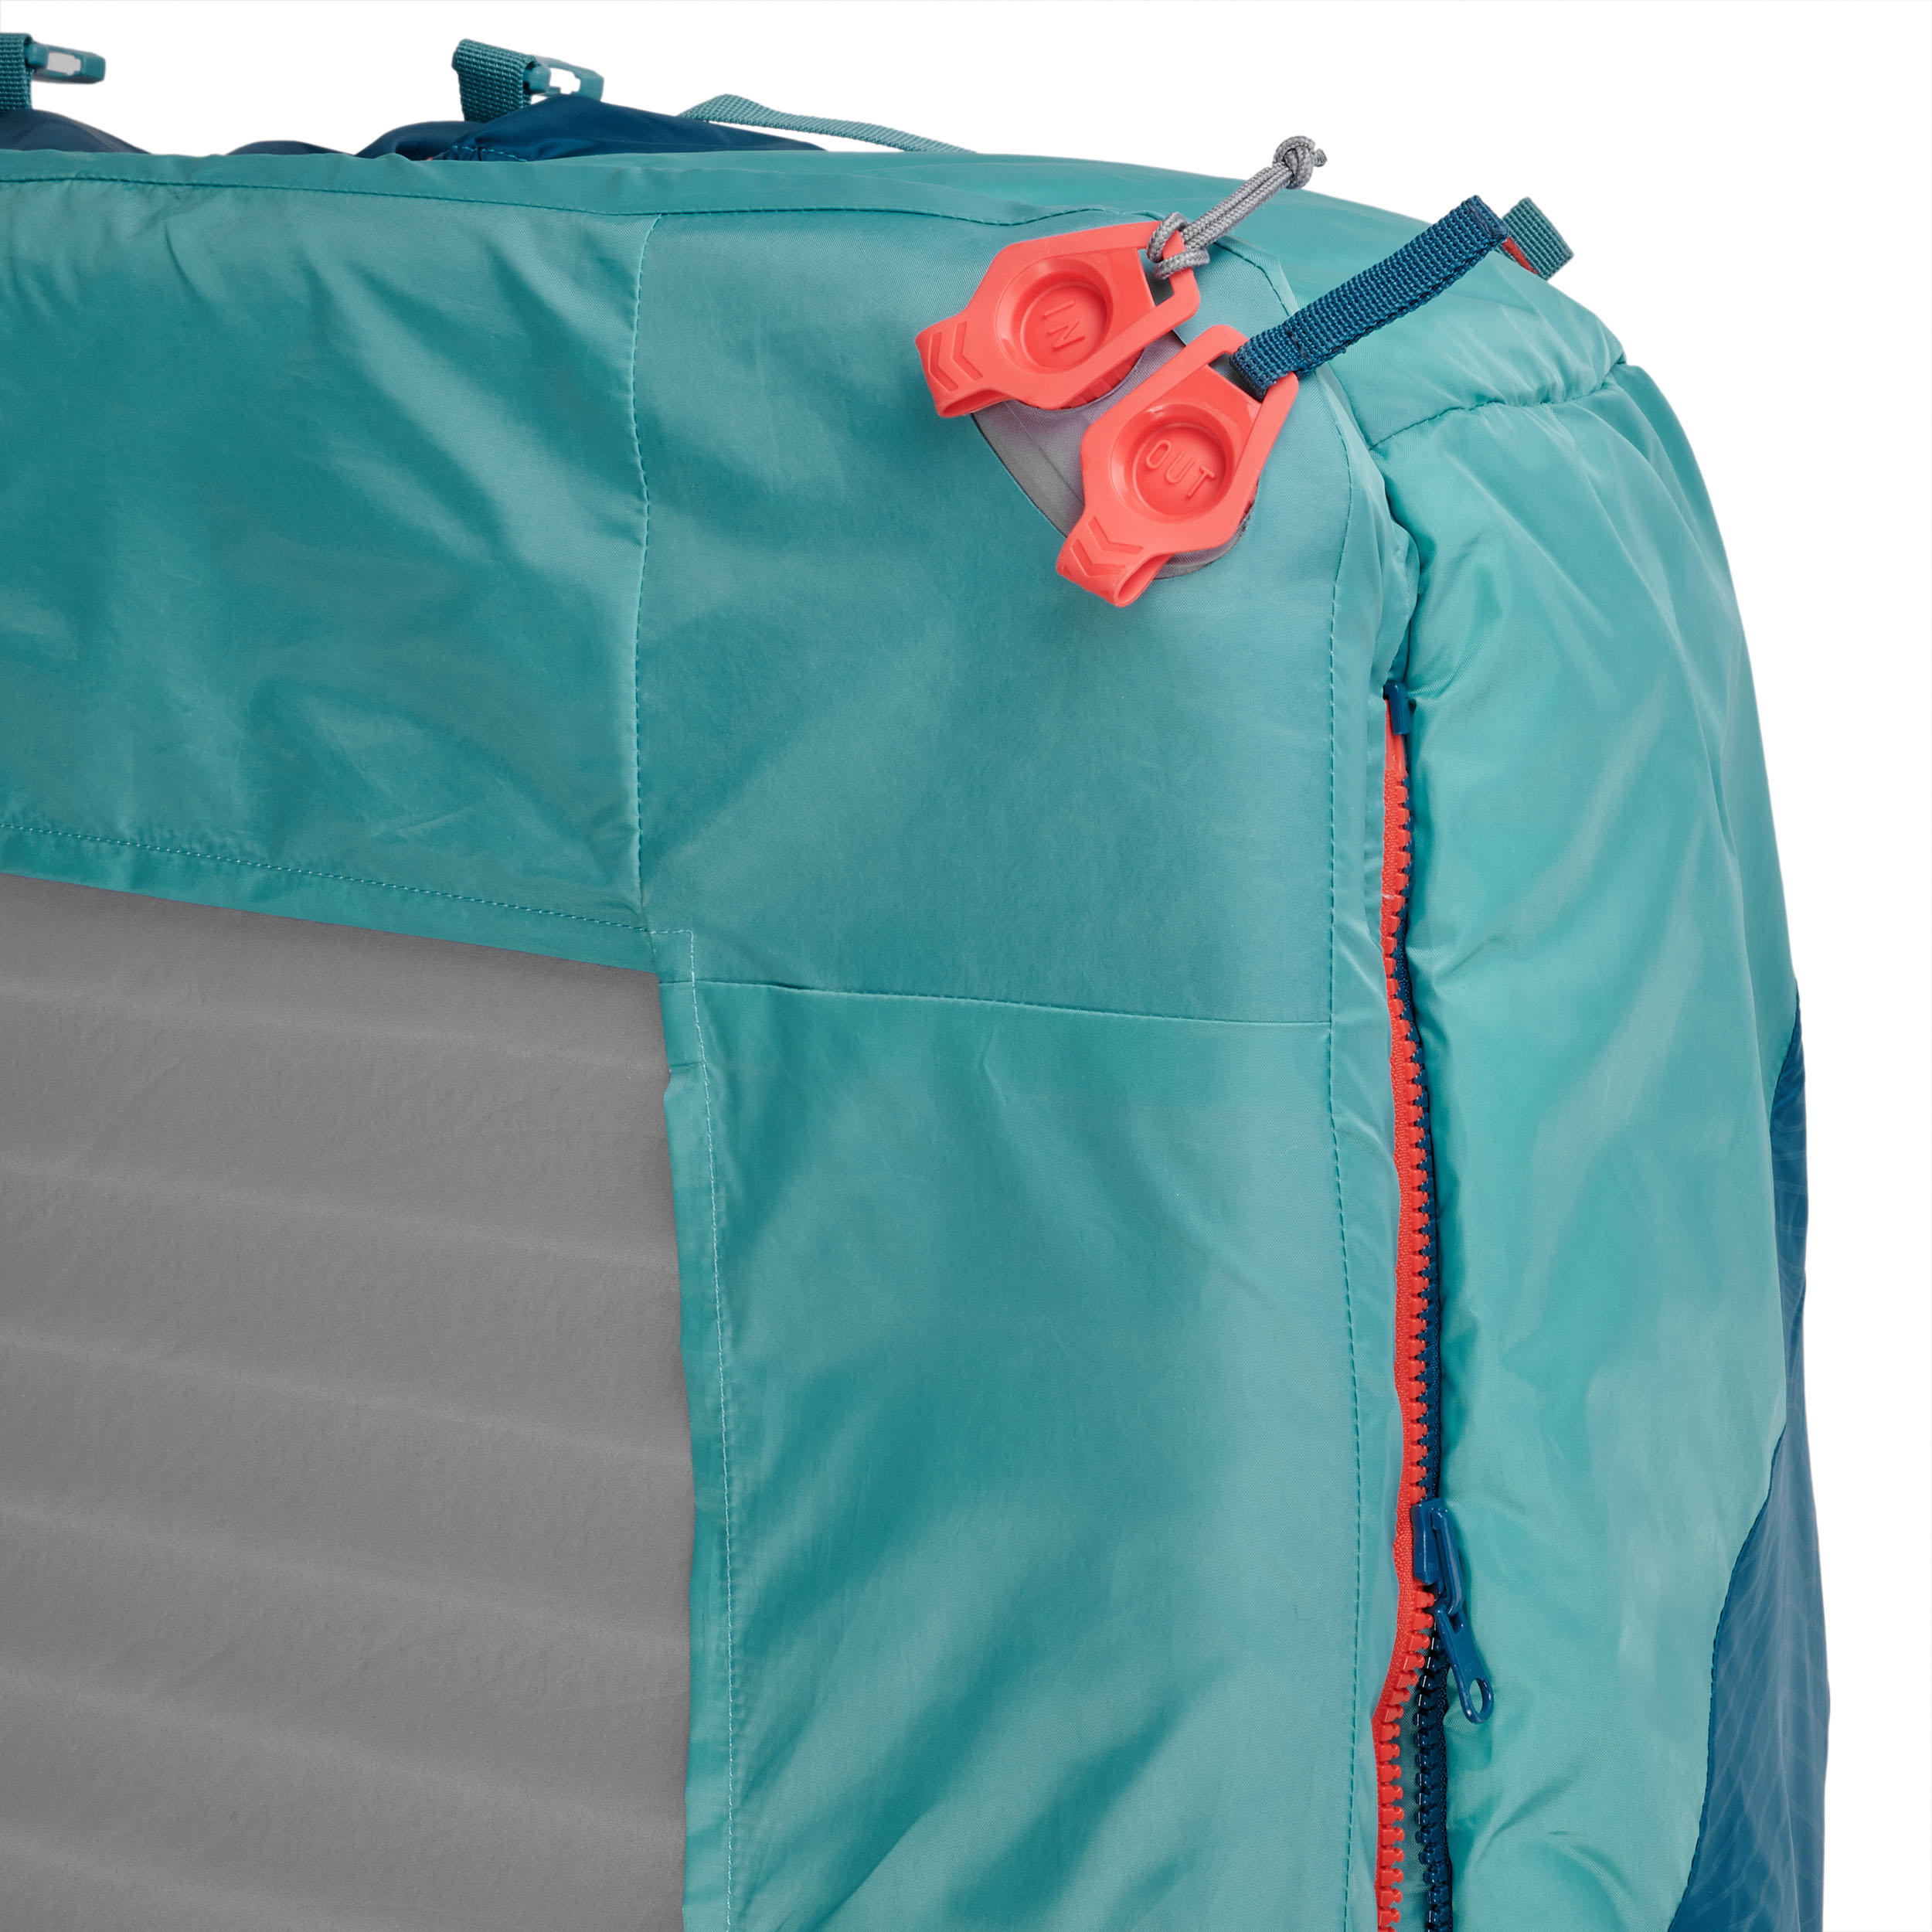 2-IN-1 SLEEPING BAG - SLEEPIN BED MH500 15°C XL 7/13